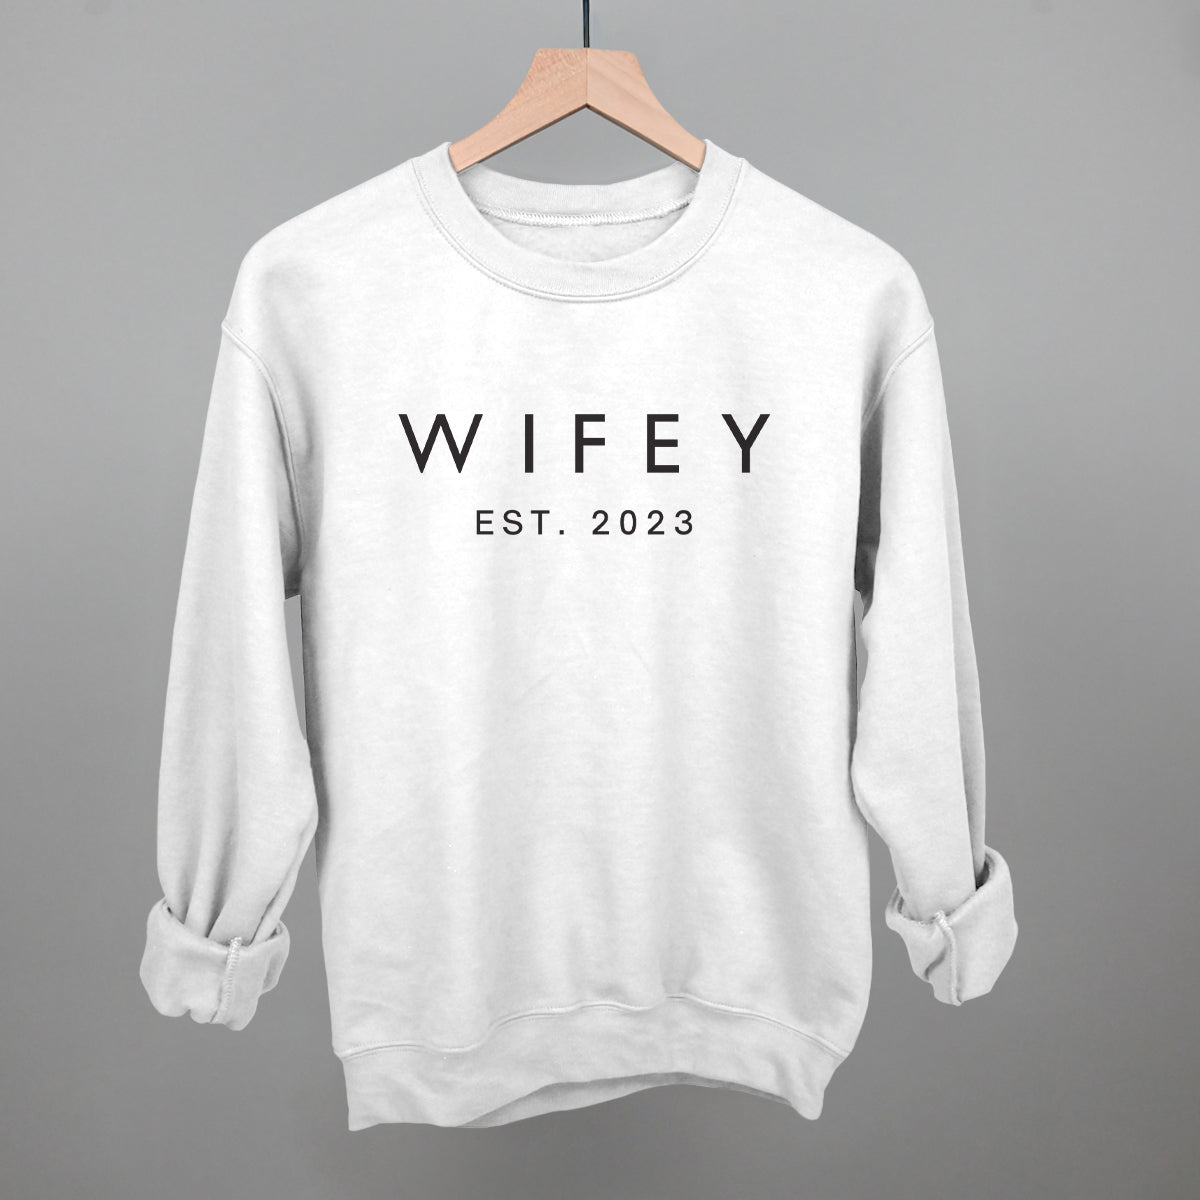 Wifey Est. 2023